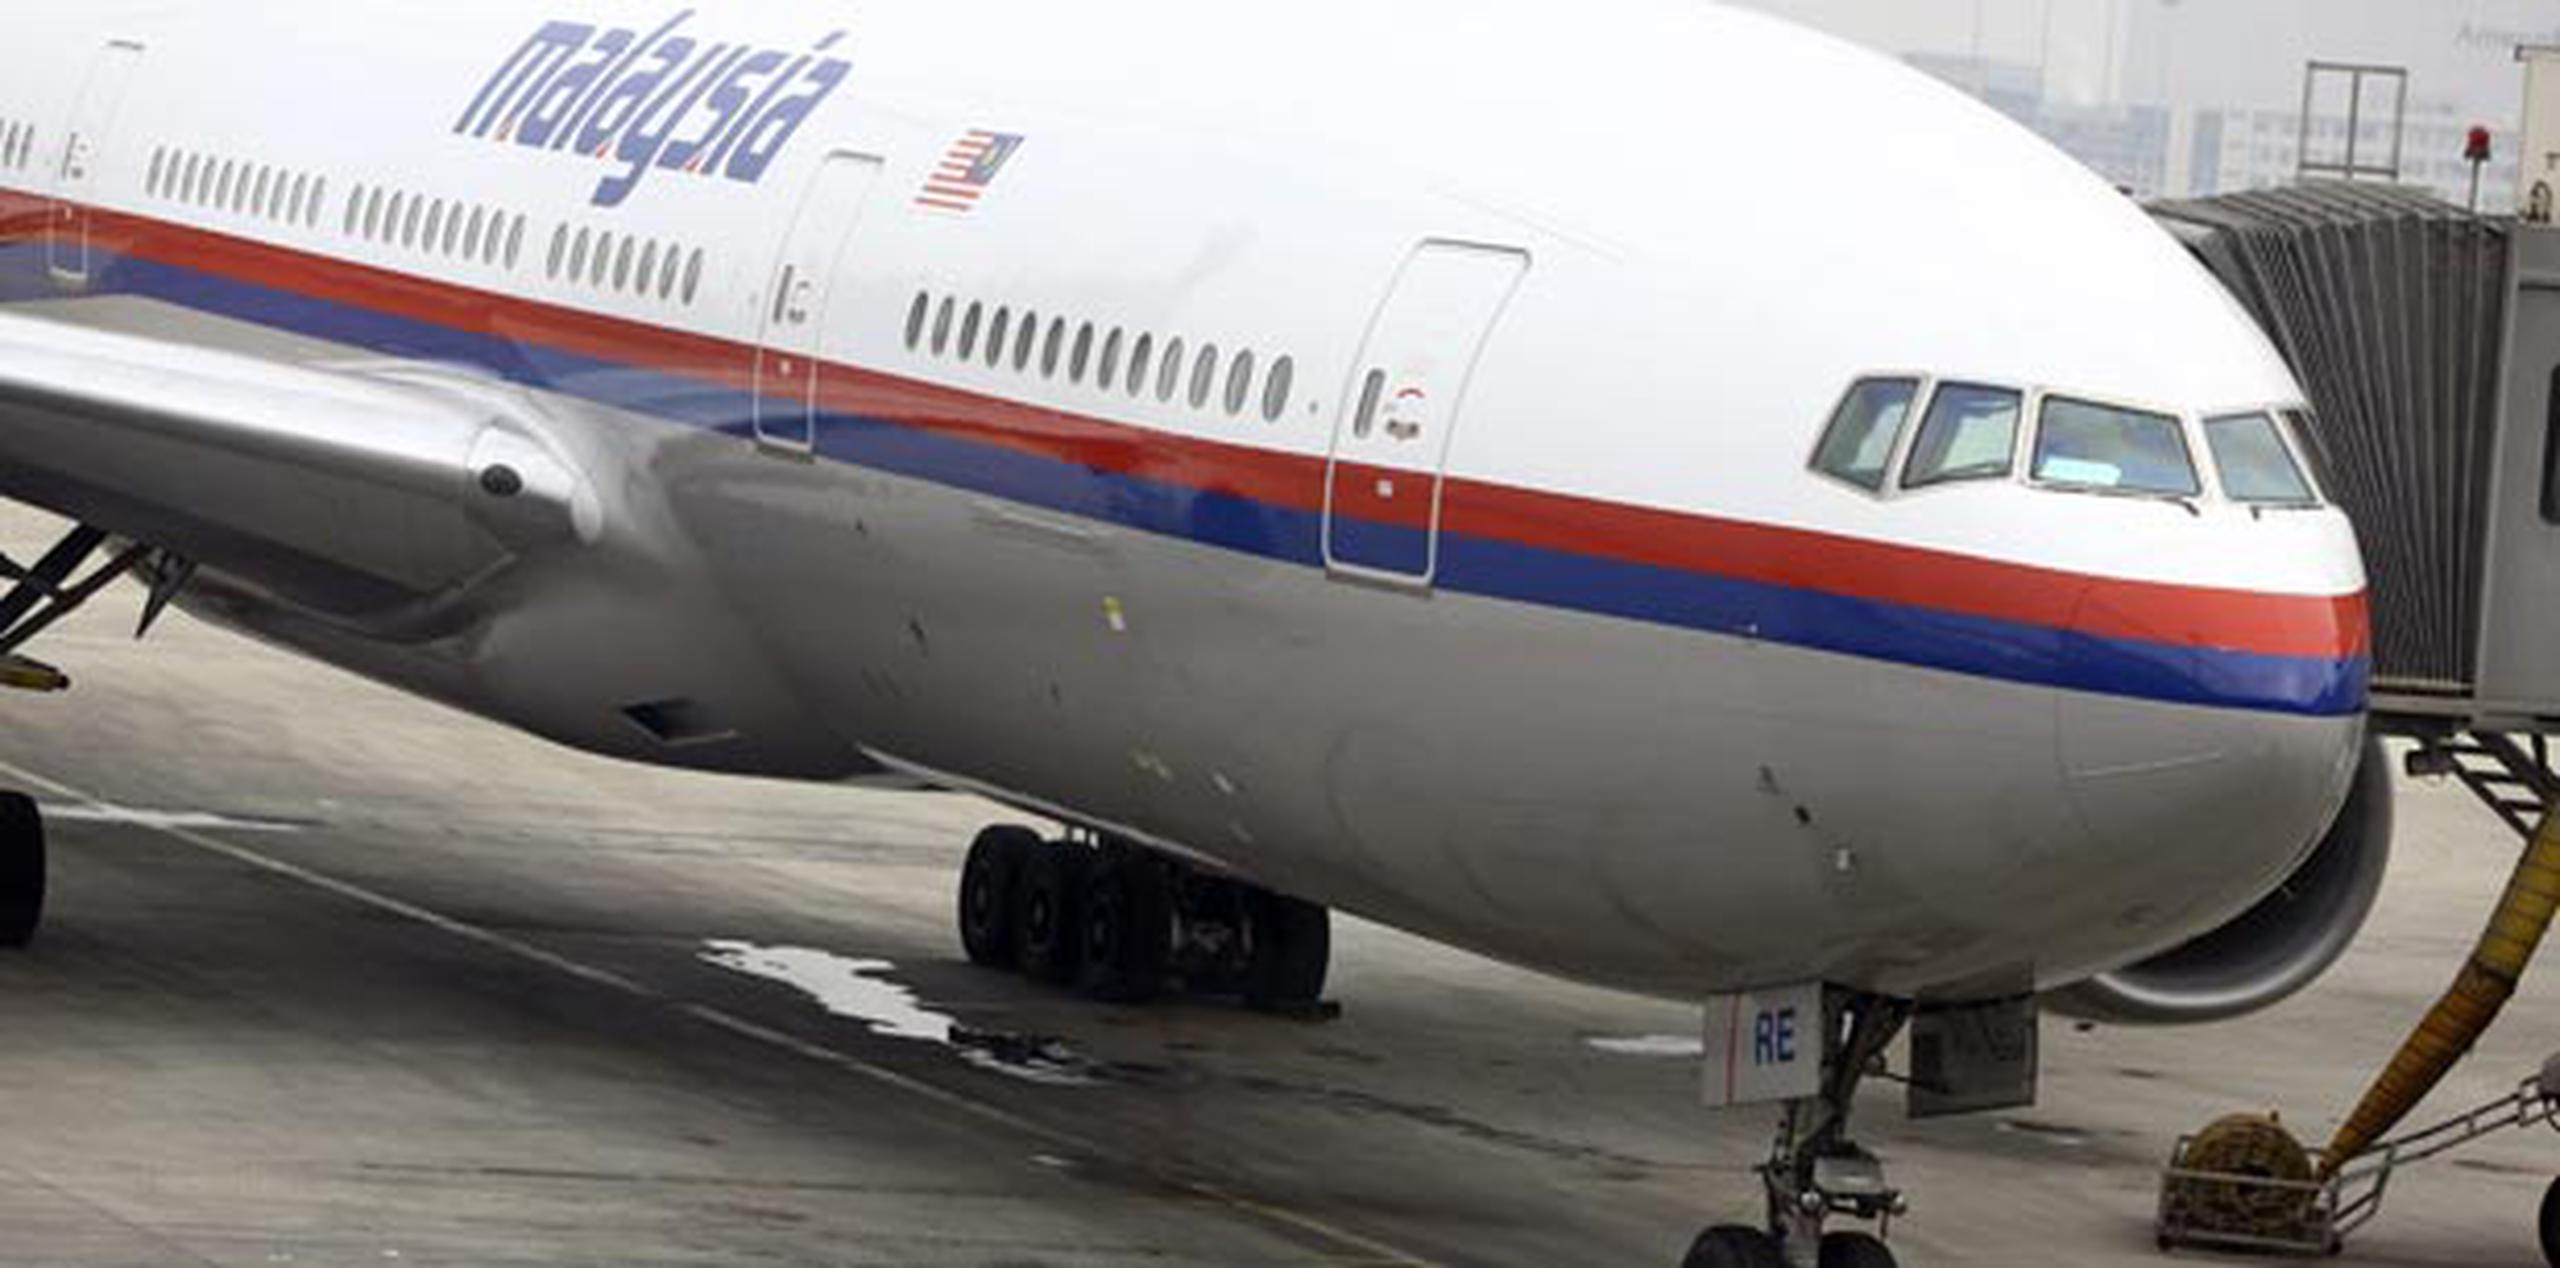 El avión de Malaysia Airlines, que había salido de Kuala Lumpur con destino a Pekín y llevaba 239 personas a bordo, desapareció en pleno vuelo hace cuatro días sobre el Golfo de Tailandia. (EFE/Diego Azubel)